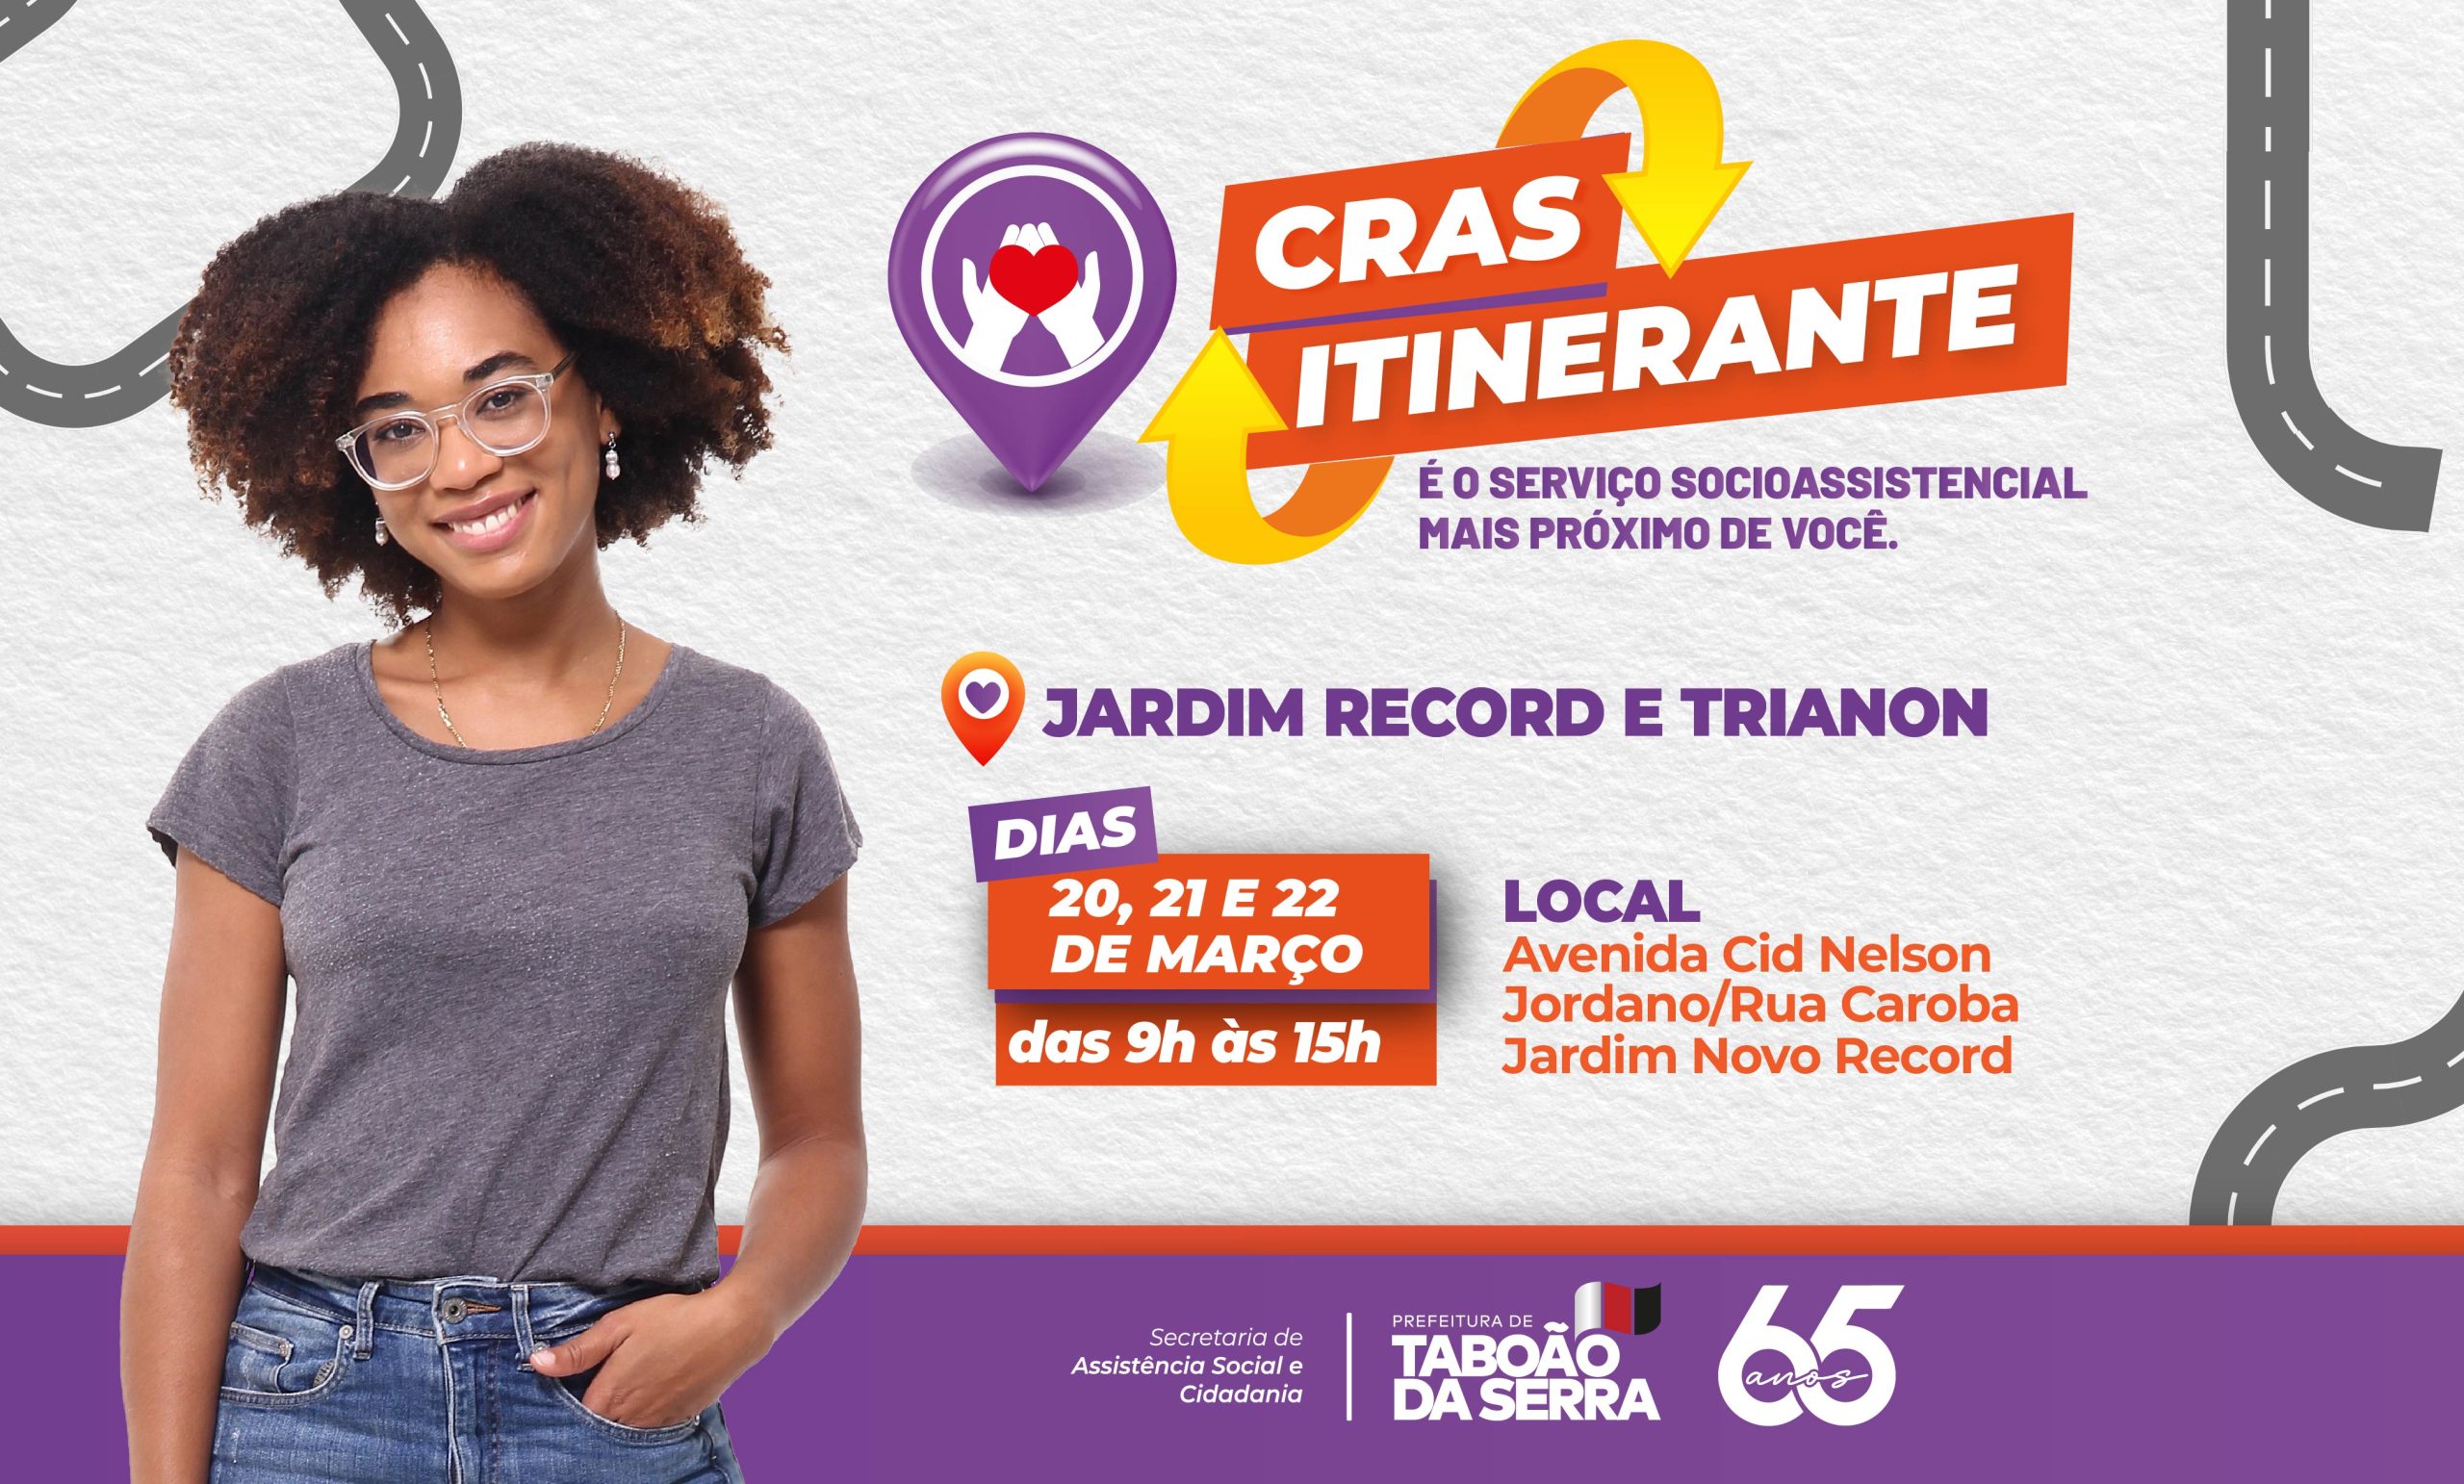 Prefeitura de Taboão da Serra leva CRAS Itinerante ao Jardim Record e Trianon a partir do dia 20 de março